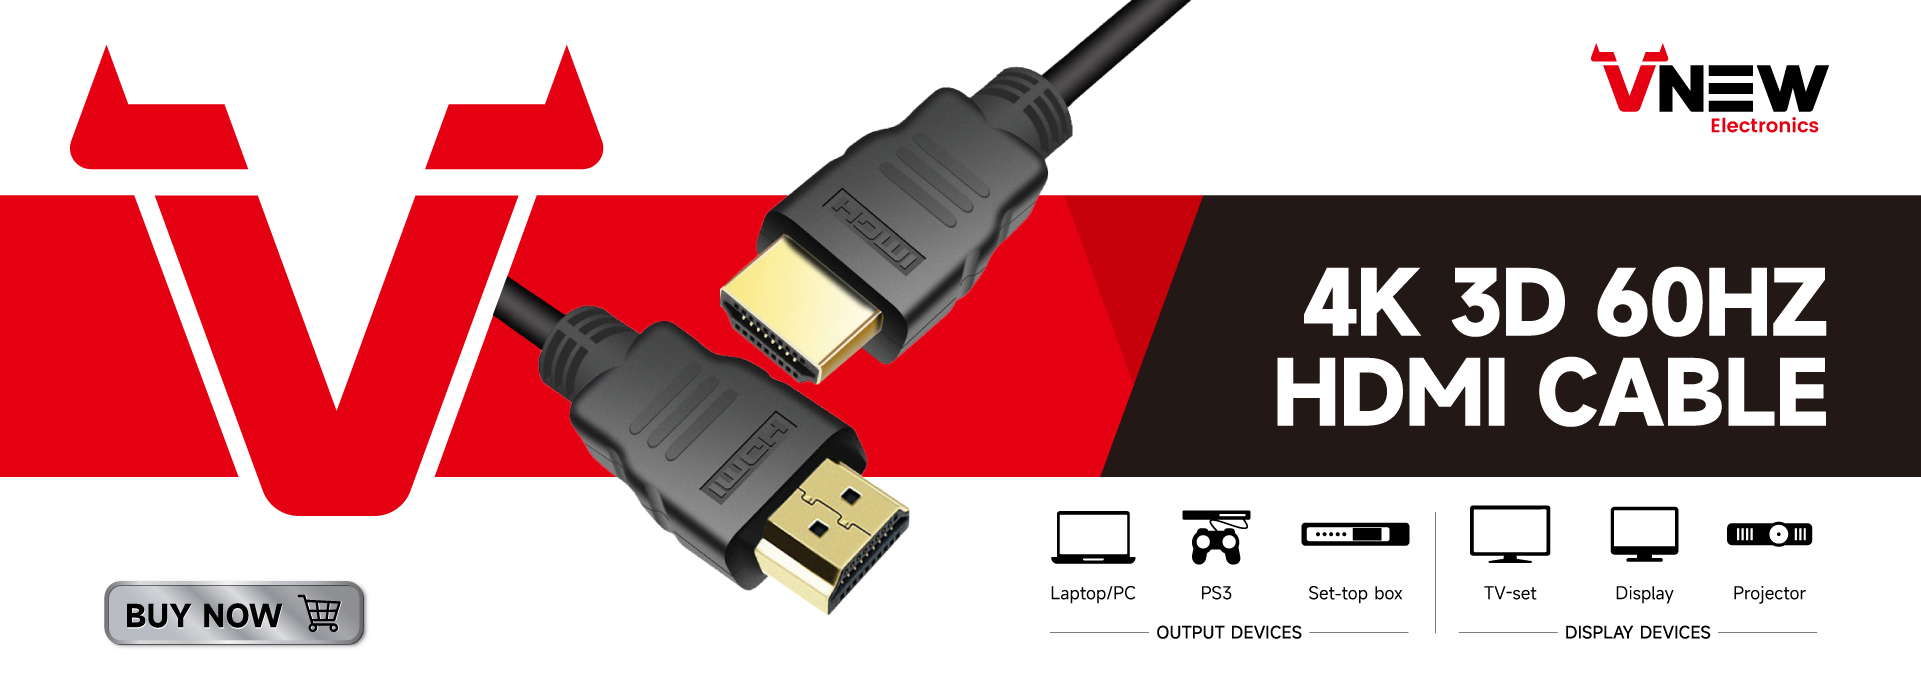 VN-HDP01 Vnew үзенчәлекле озынлыкны күрсәтү HDMI CABLE 4K 60Hz DP